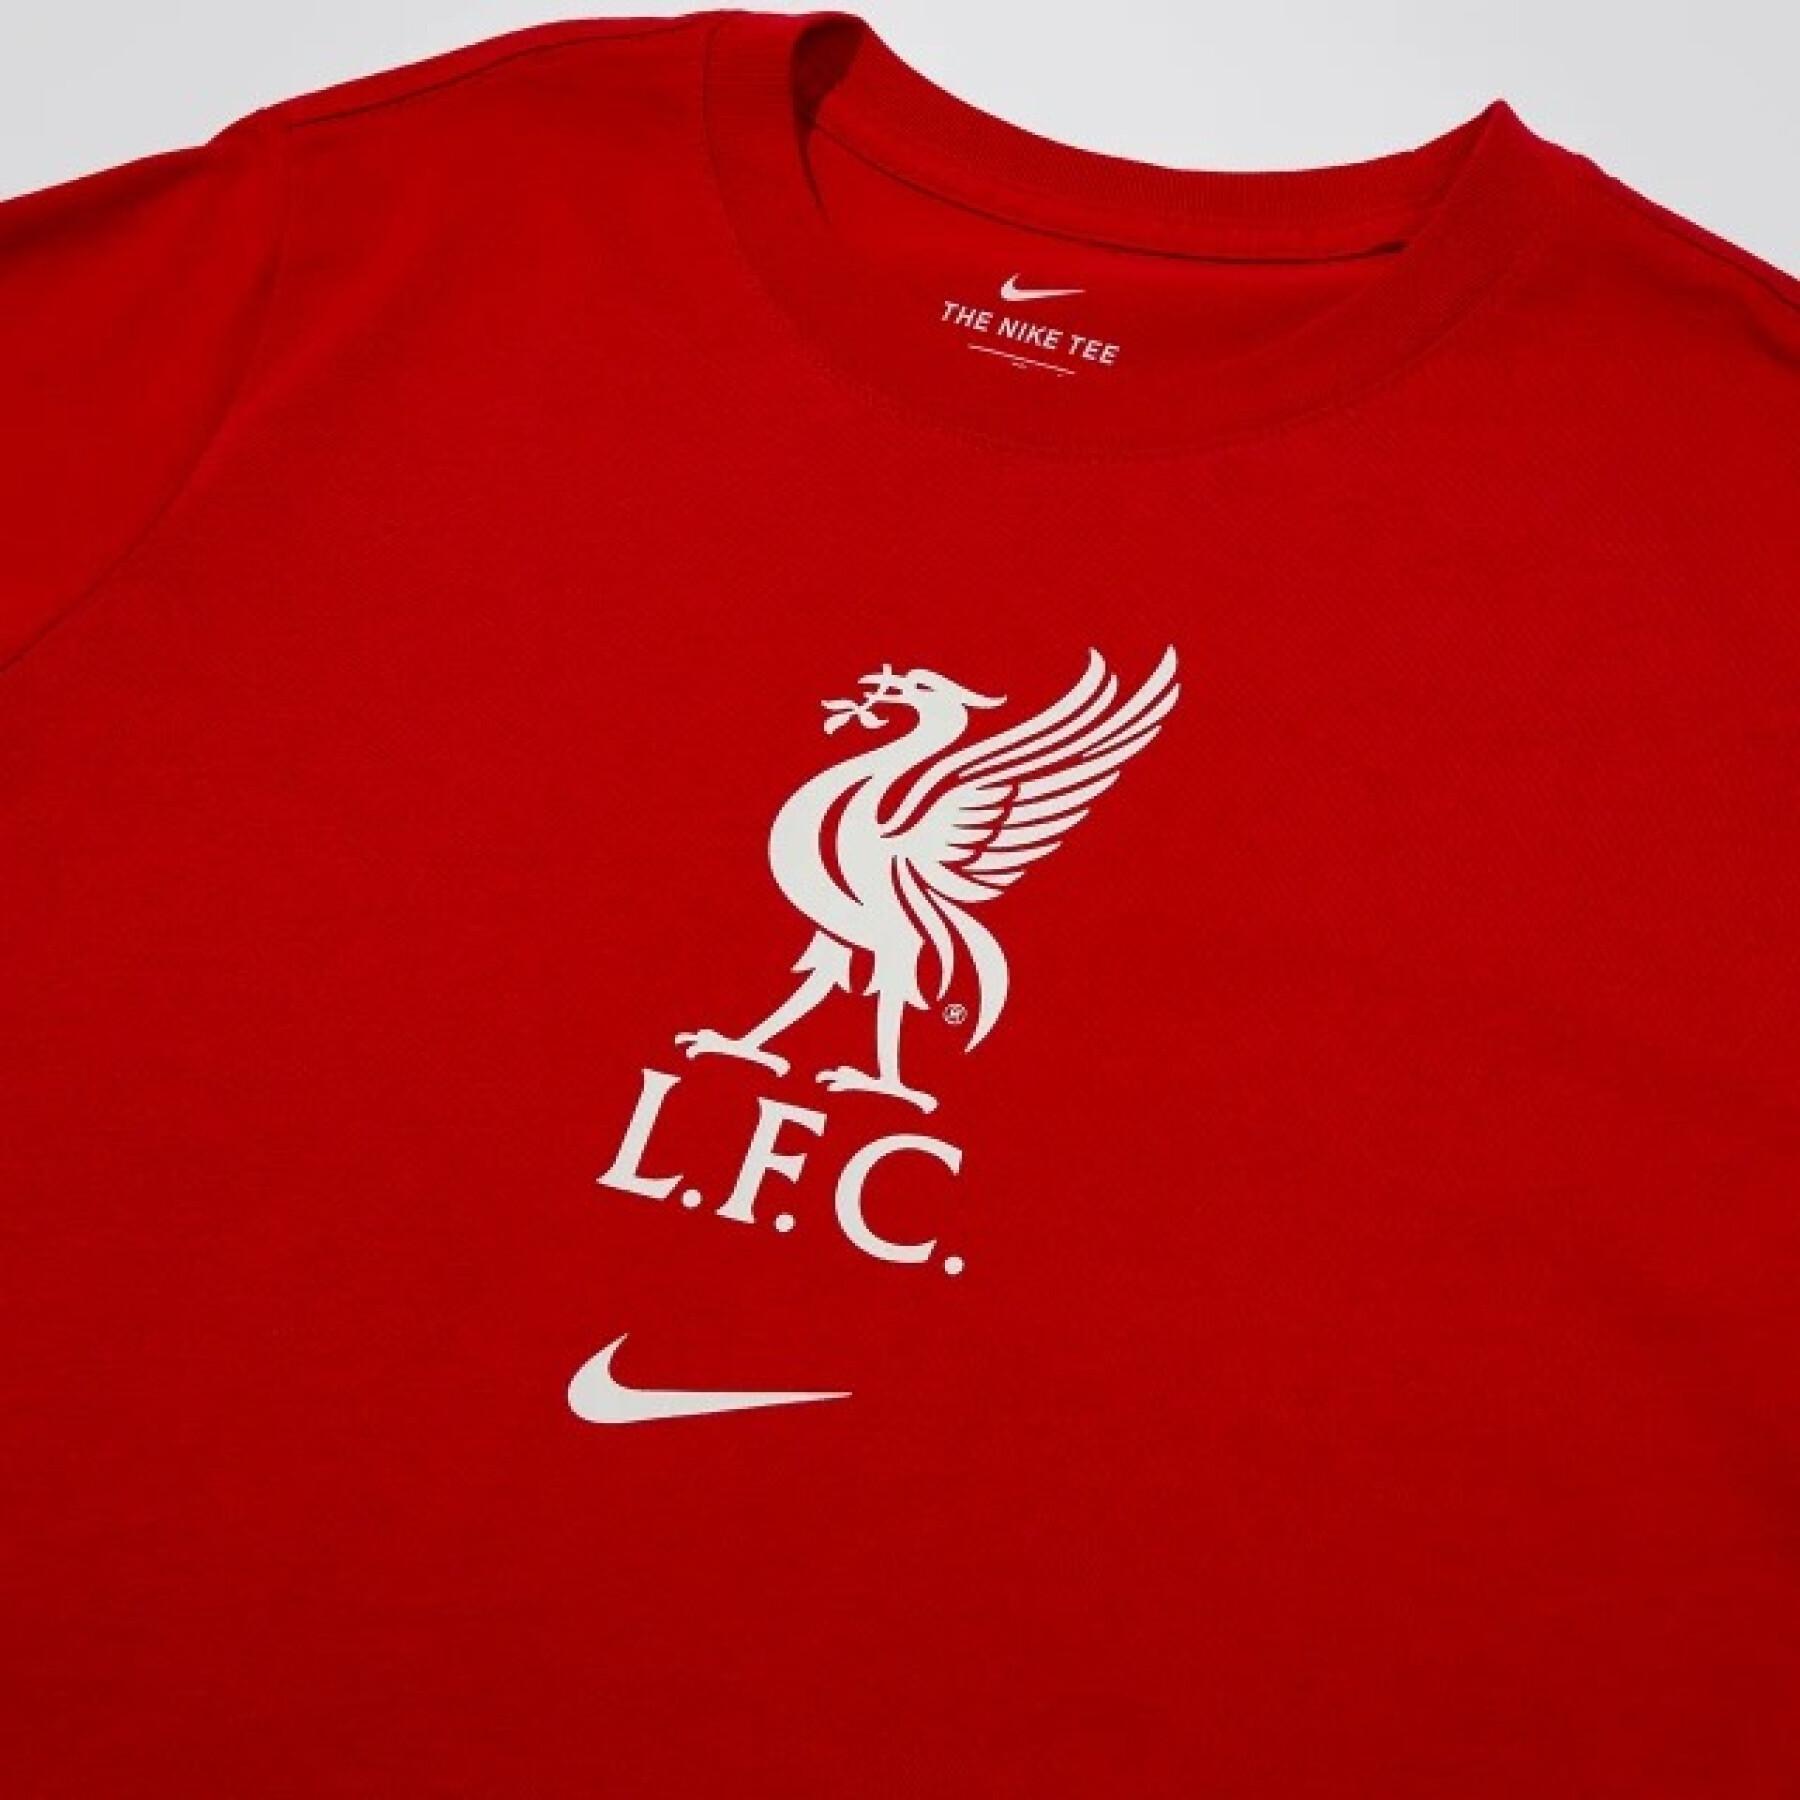 T-shirt de criança Liverpool FC 2021/22